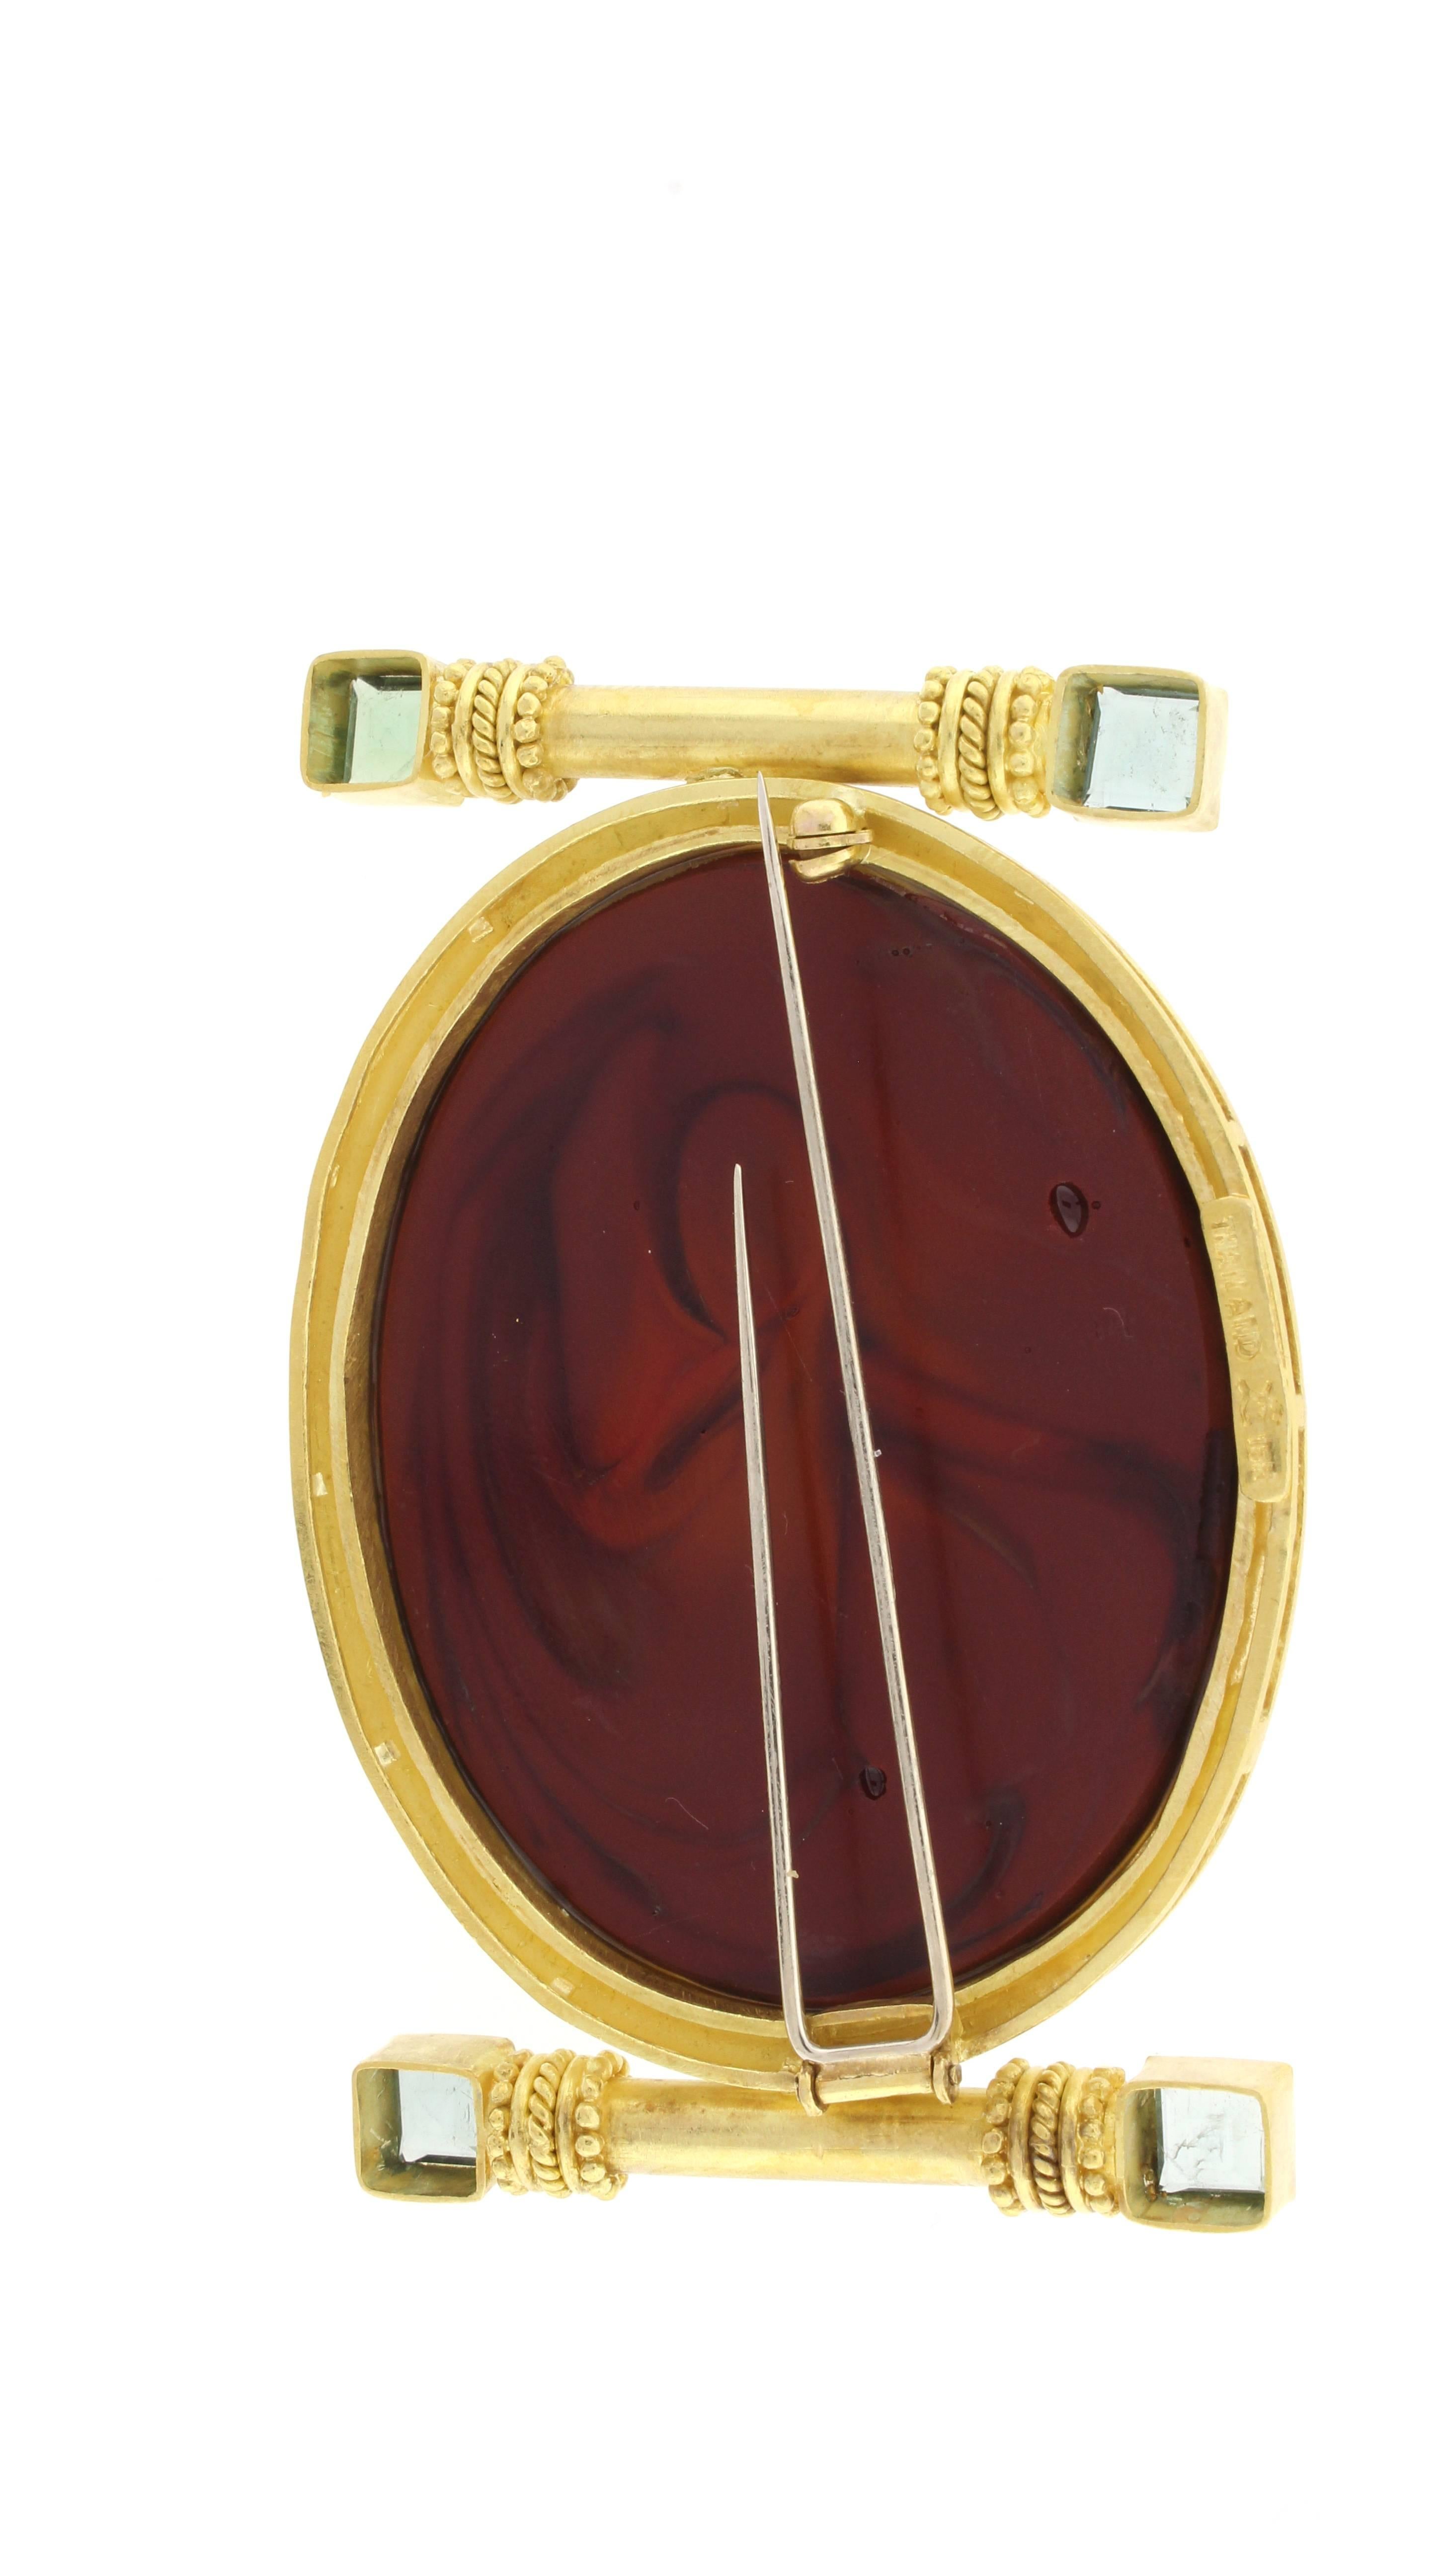 Von der renommierten Juwelierin Elizabeth Locke stammt dieses 19-karätige, geschliffene burgunderfarbene Glas  kamee-Brosche mit der Darstellung  der Kopf der Medusa aus der griechischen Mythologie. Die ovale Kamee misst 1 ½ mal 2 ¼ Zoll.  Die Kamee